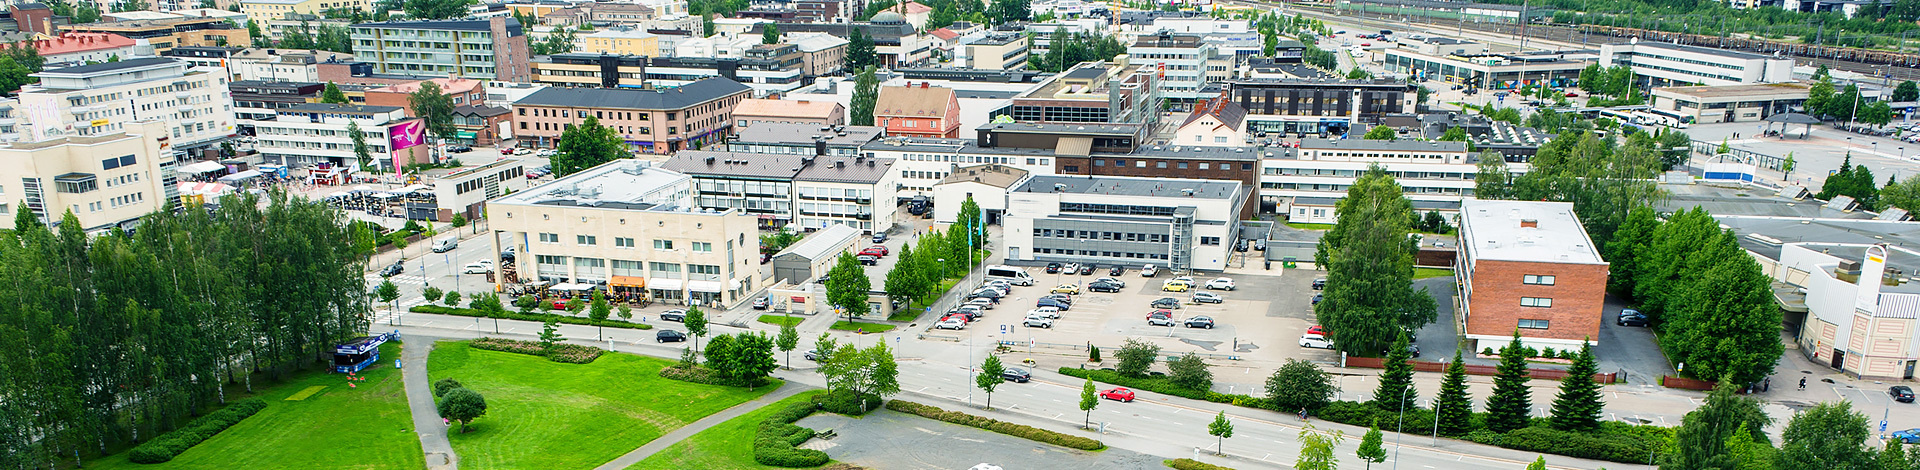 View of Seinäjoki